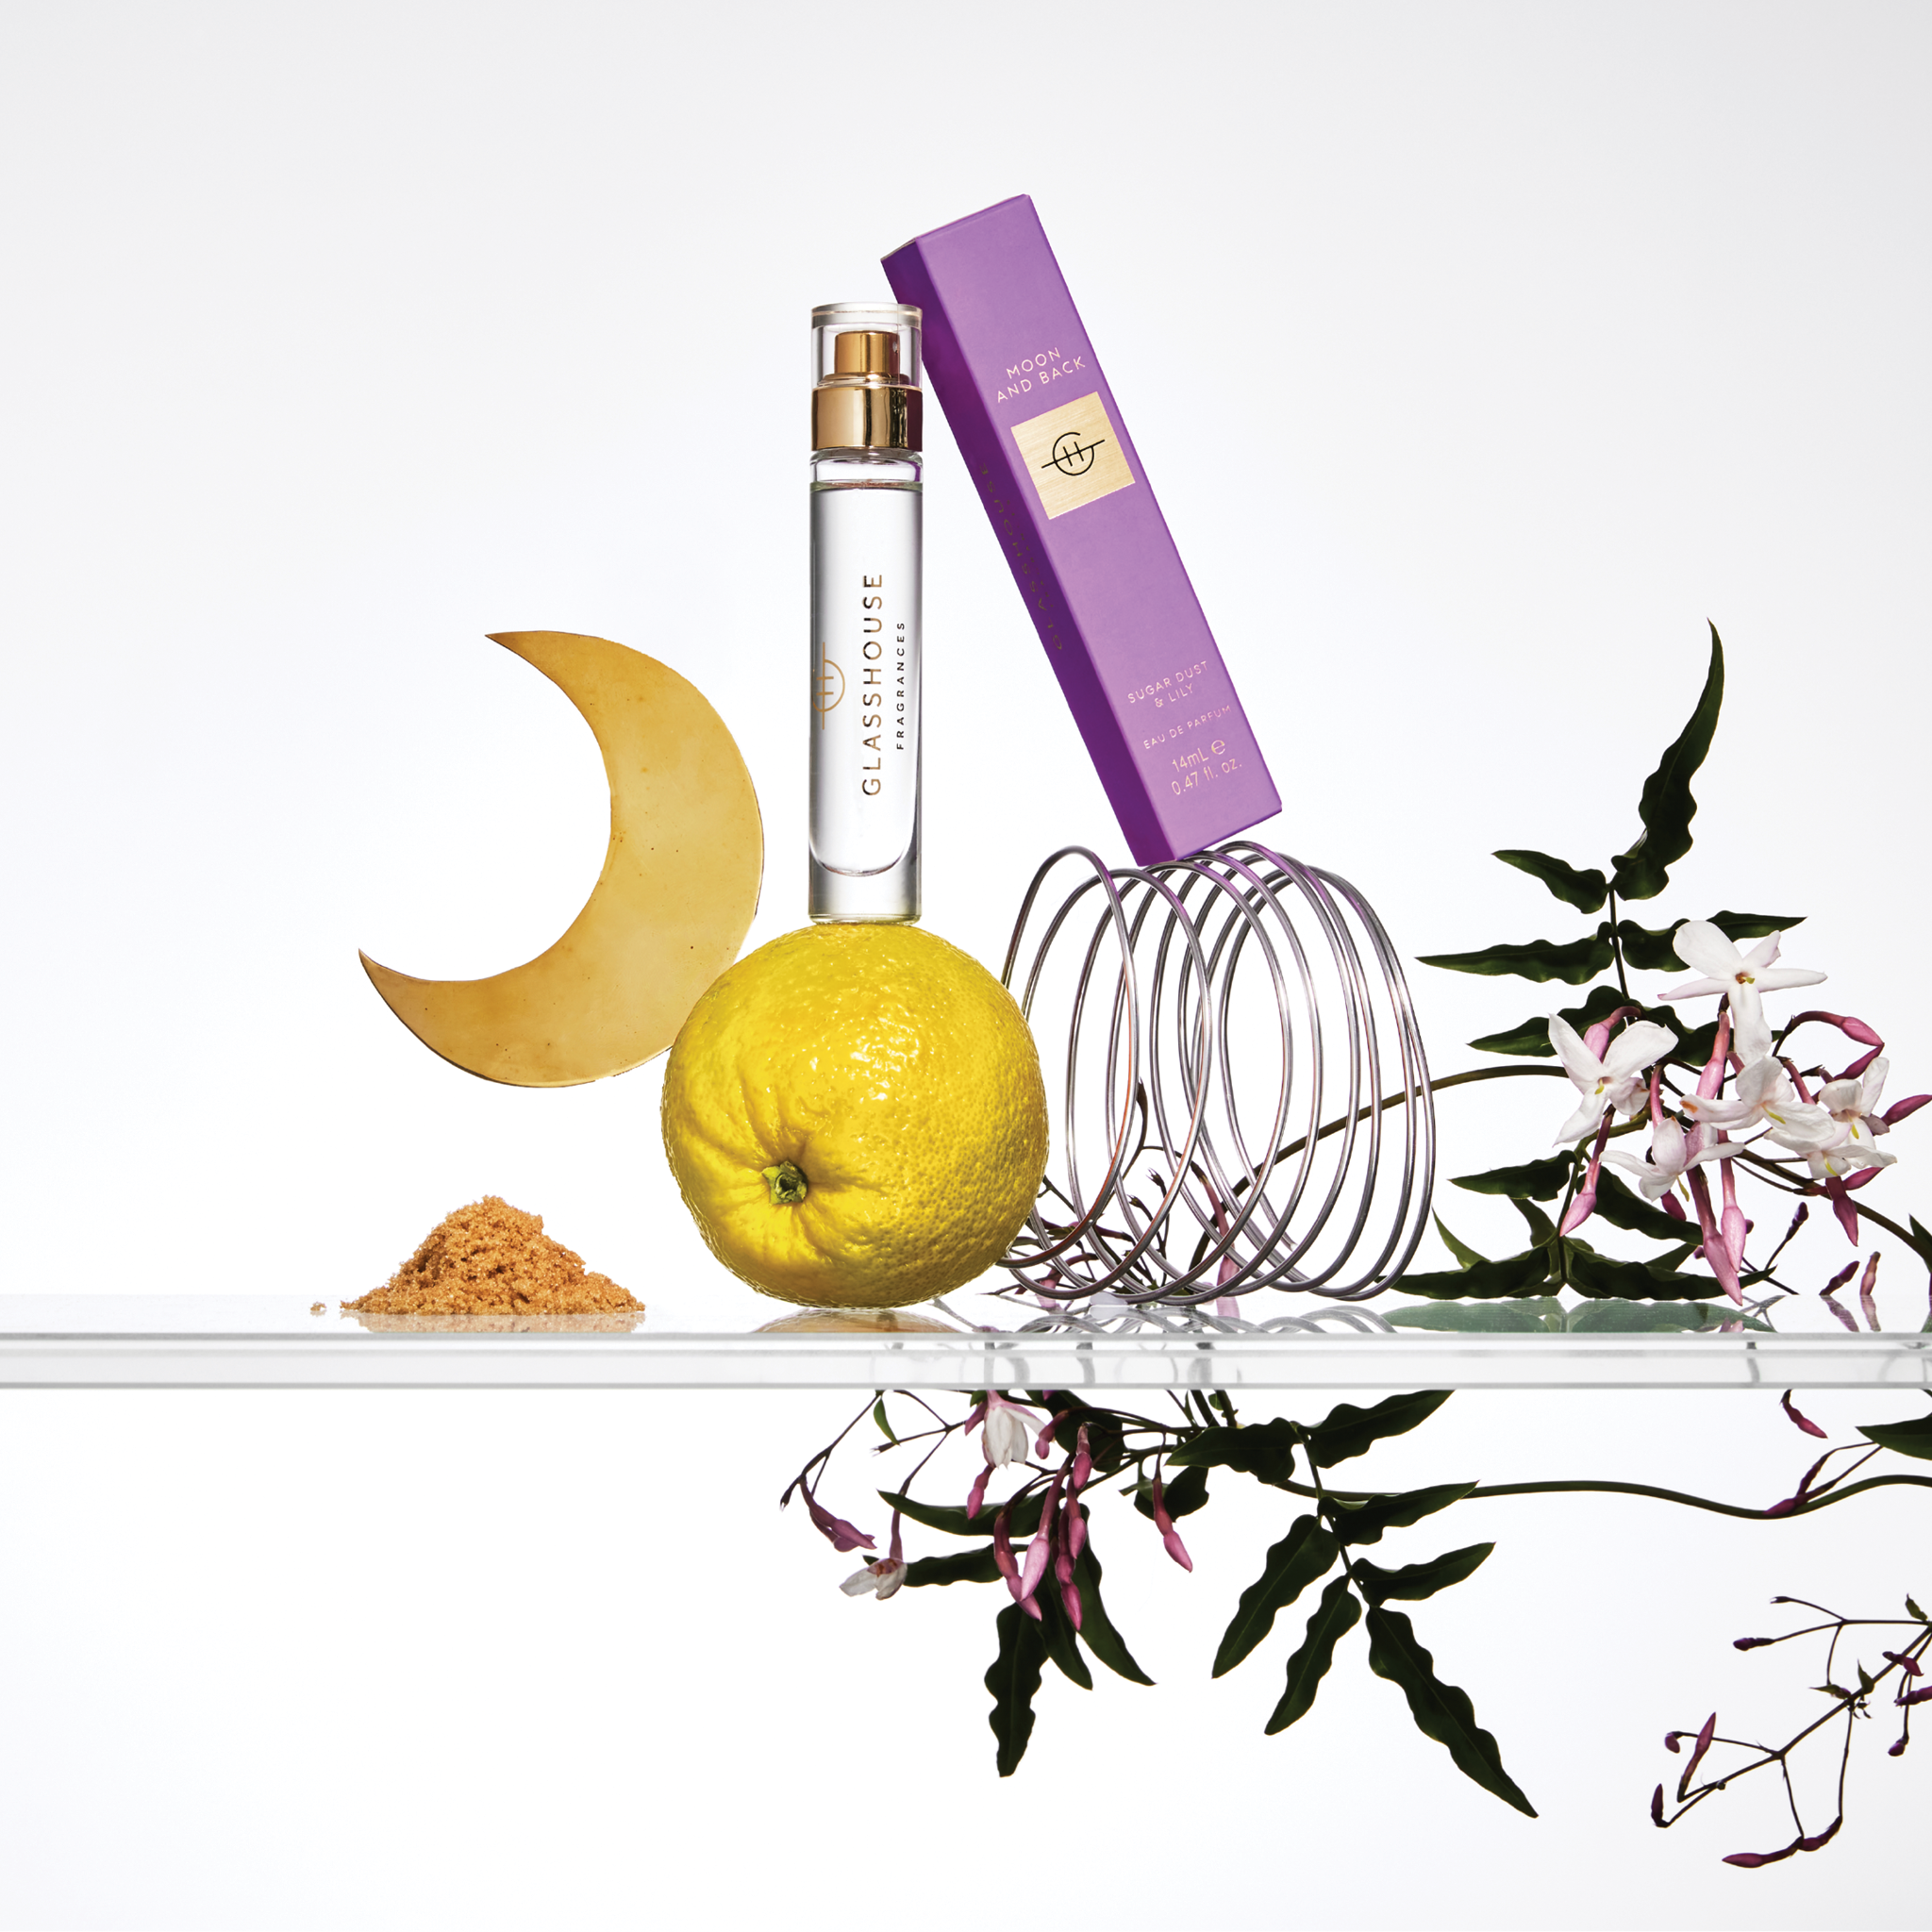 Glasshouse Fragrances Moon & Back 14ml Eau de parfum with box on glass shelf with lilies & citrus.